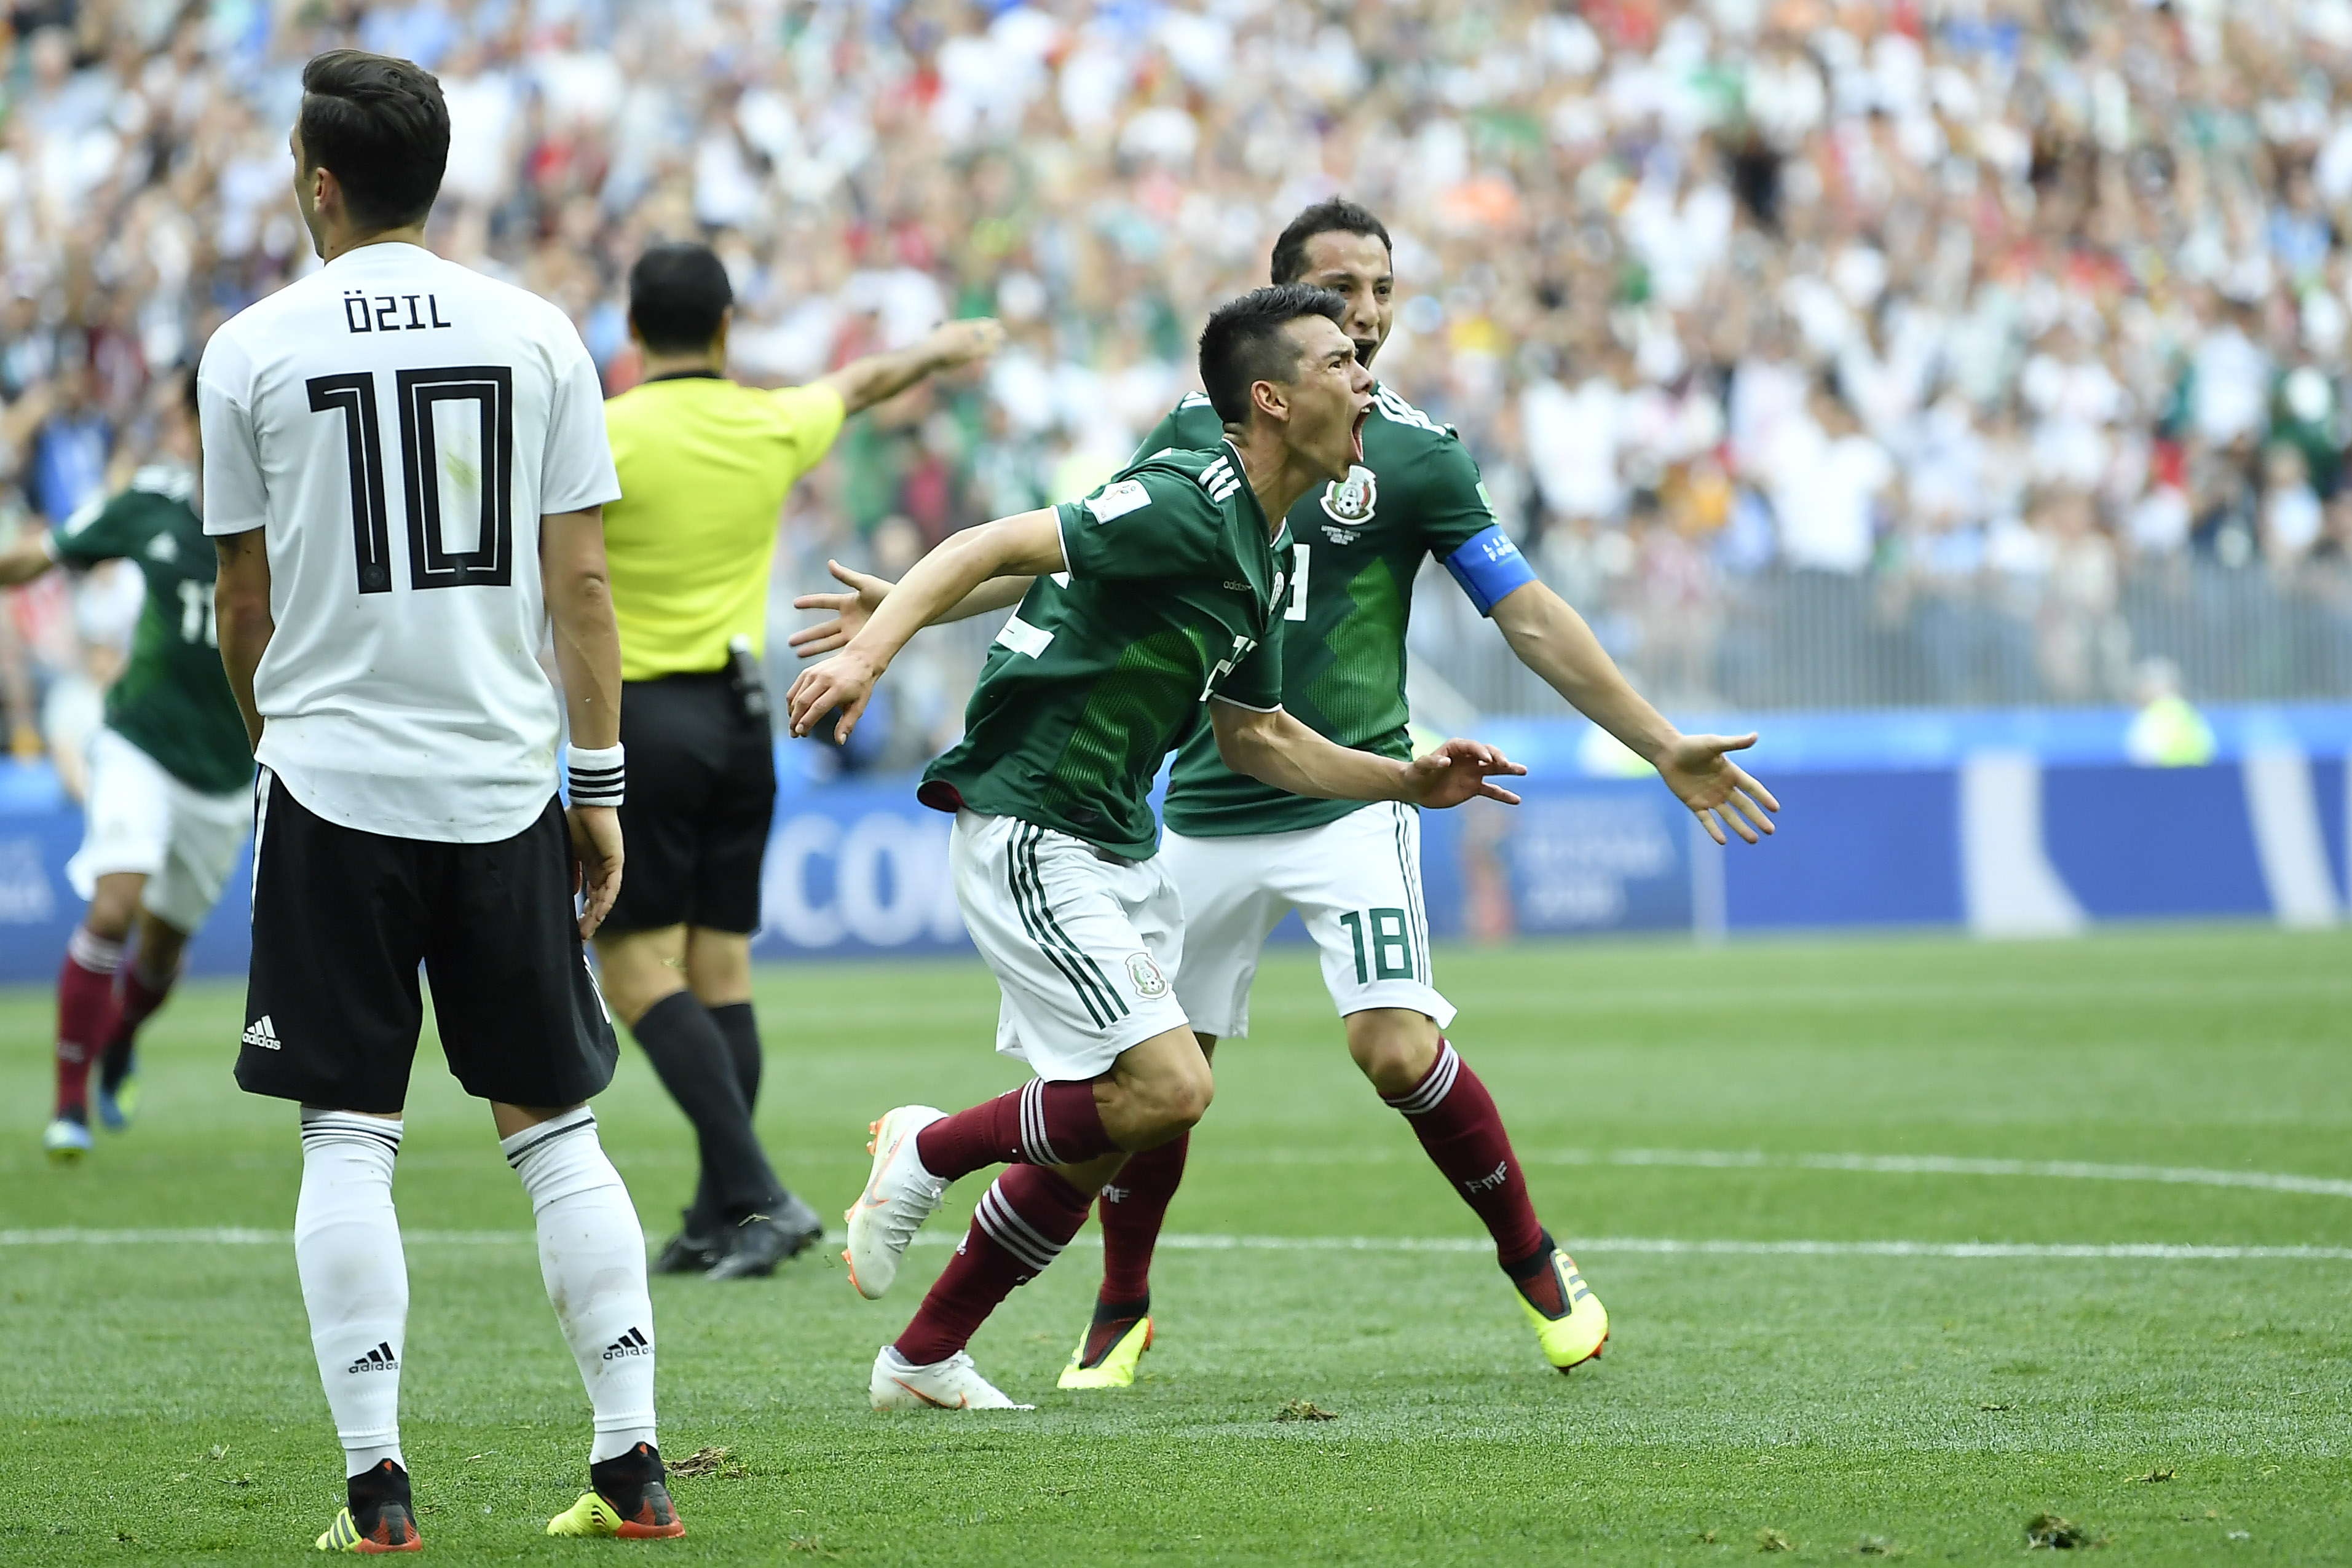 Alemania vs México, el partido más visto en Rusia 2018